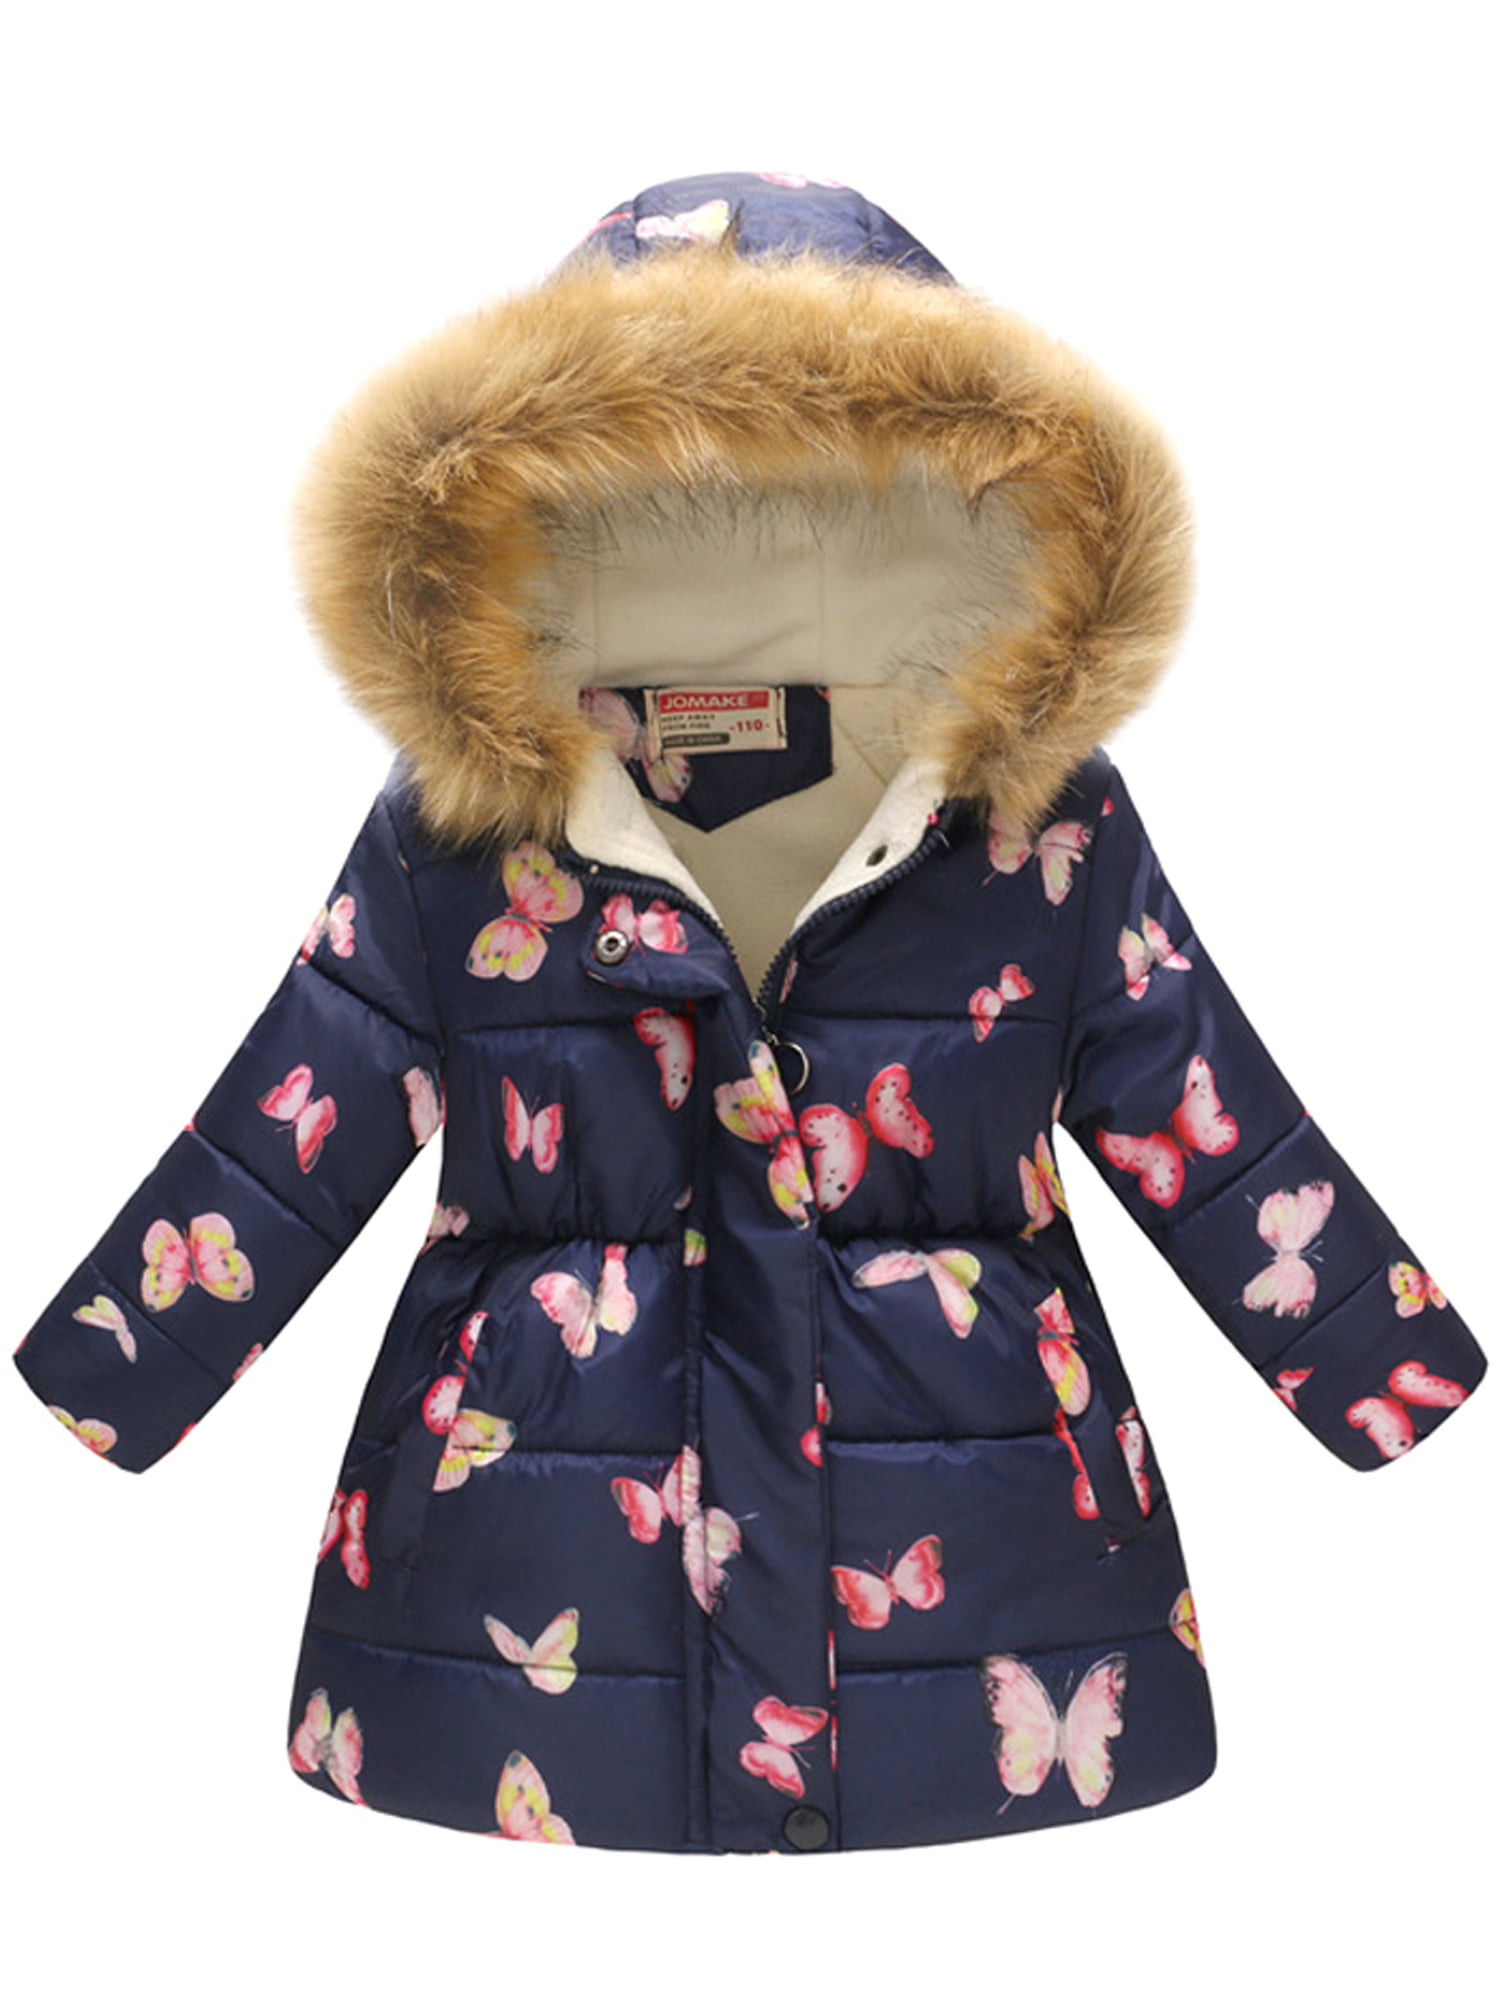 Kids Girls Coat Jacket Faux Fur Hooded Long Parka Winter Warm Coat 